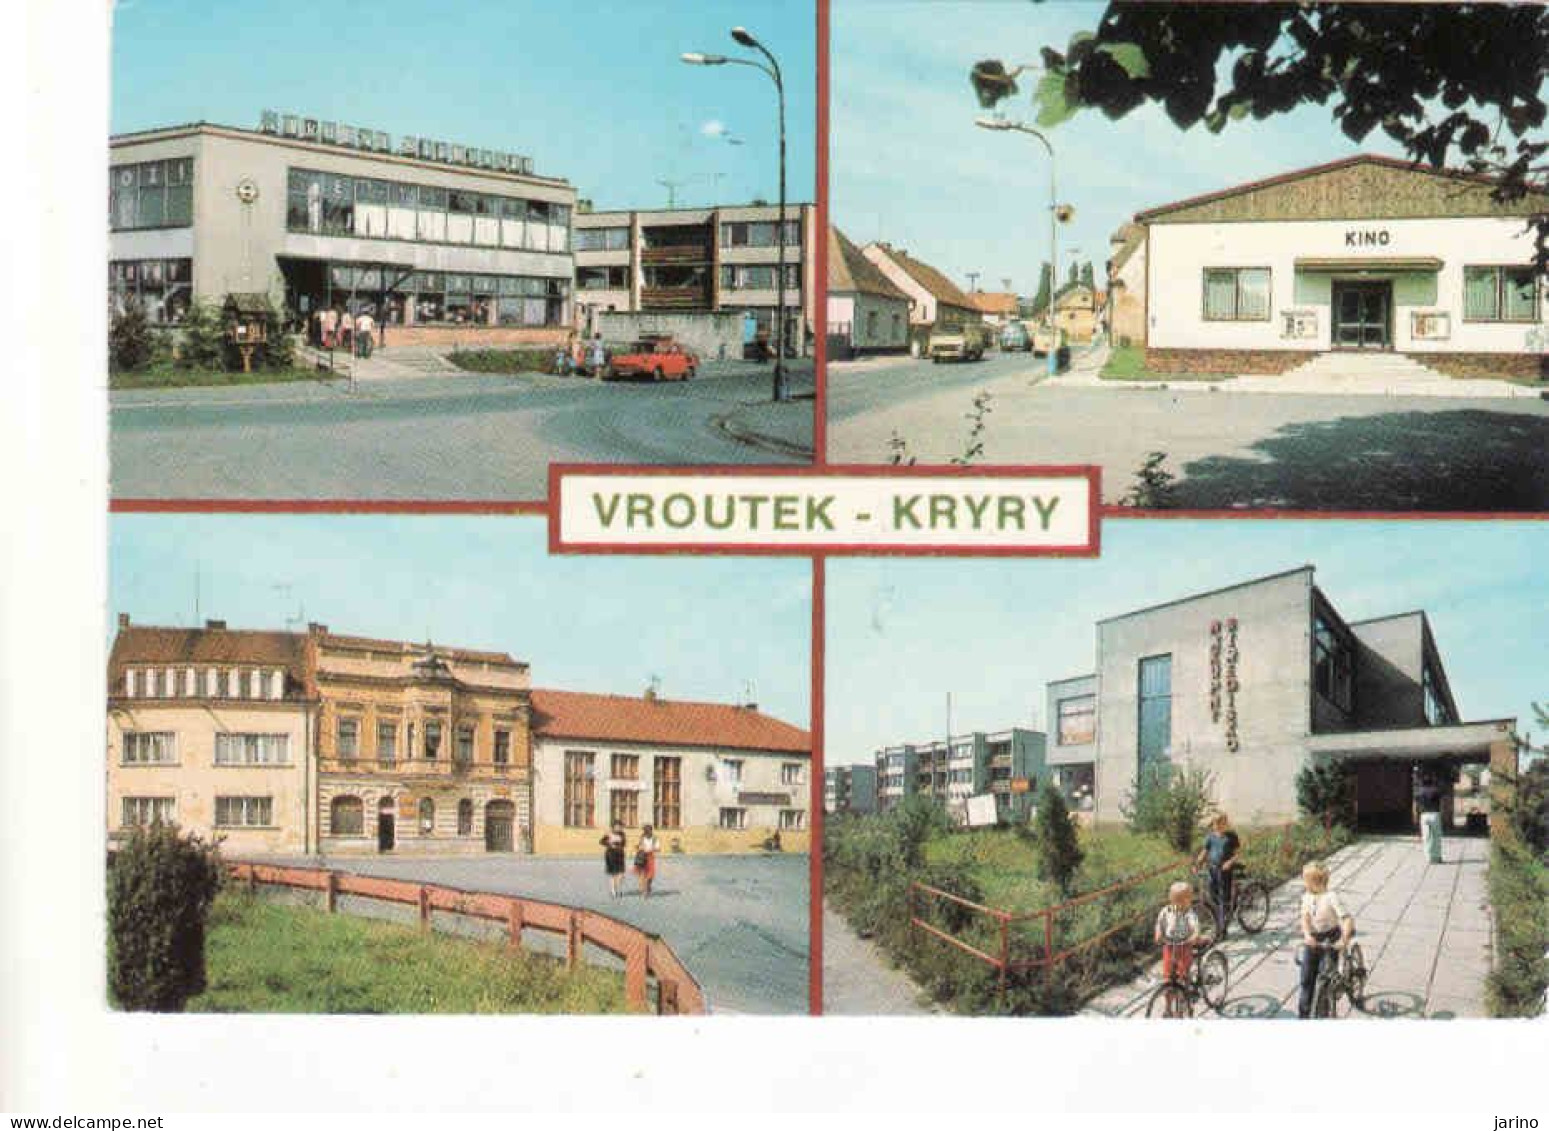 Czech Republic, Vroutek - Kryry, Kino, Okres Louny, Used 1989 - Czech Republic